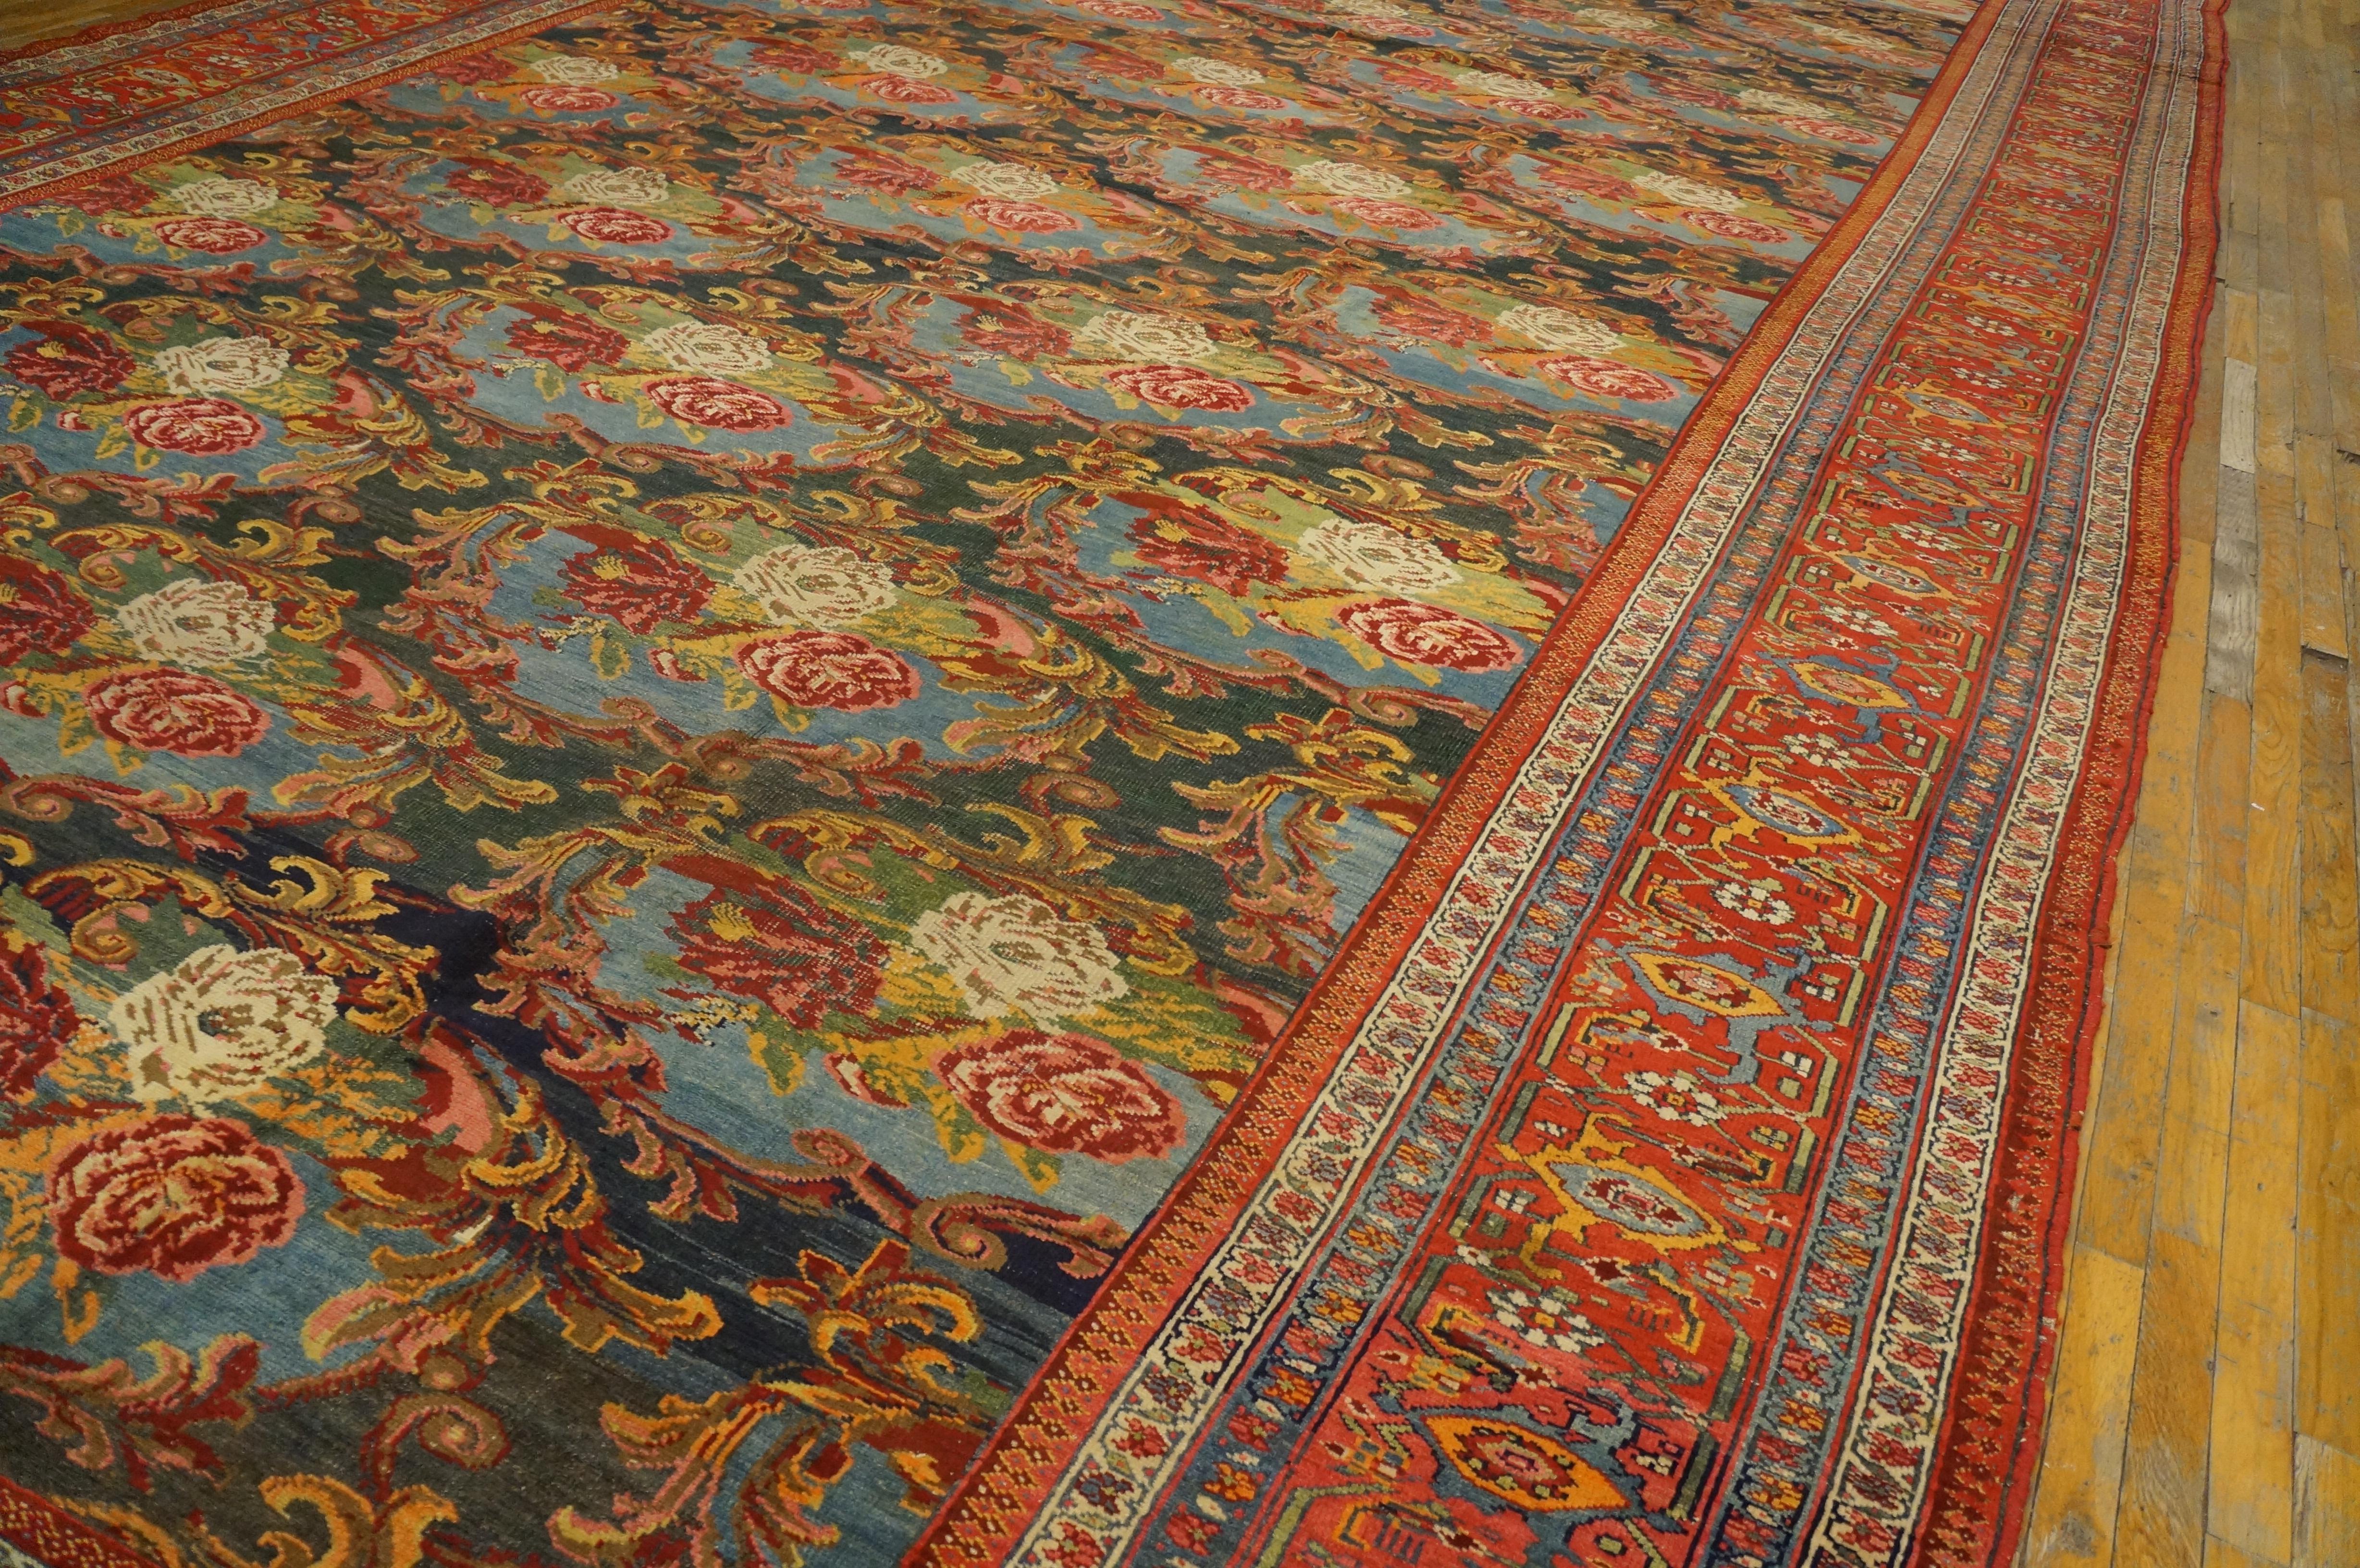 Antique N.W.Persian rug. Measures: 12'4